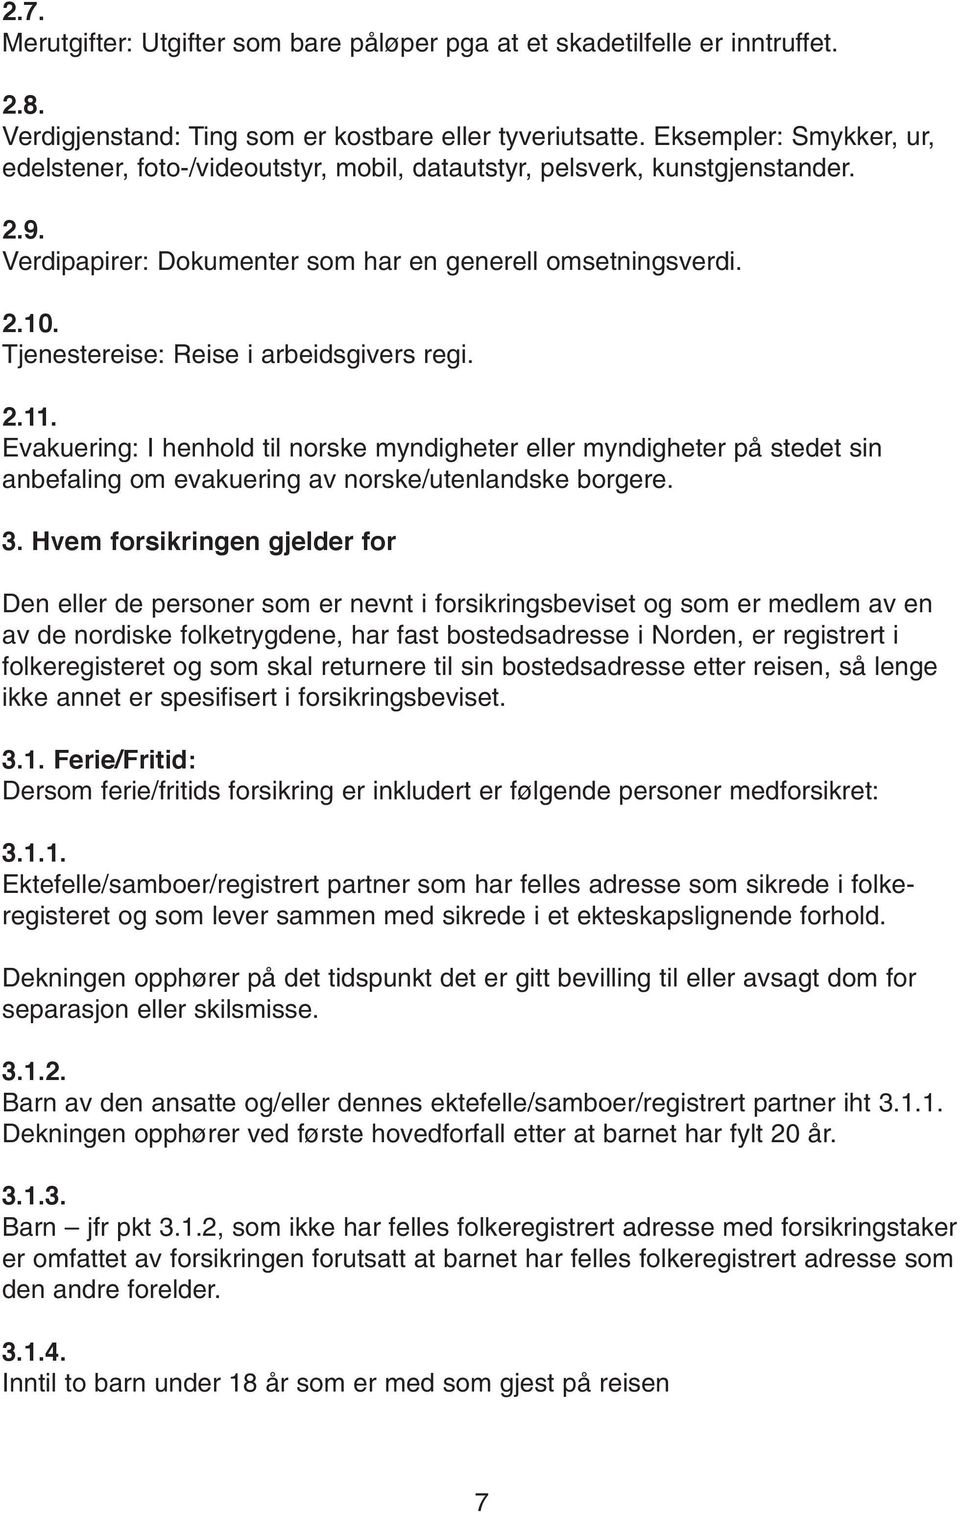 Tjenestereise: Reise i arbeidsgivers regi. Evakuering: I henhold til norske myndigheter eller myndigheter på stedet sin anbefaling om evakuering av norske/utenlandske borgere.